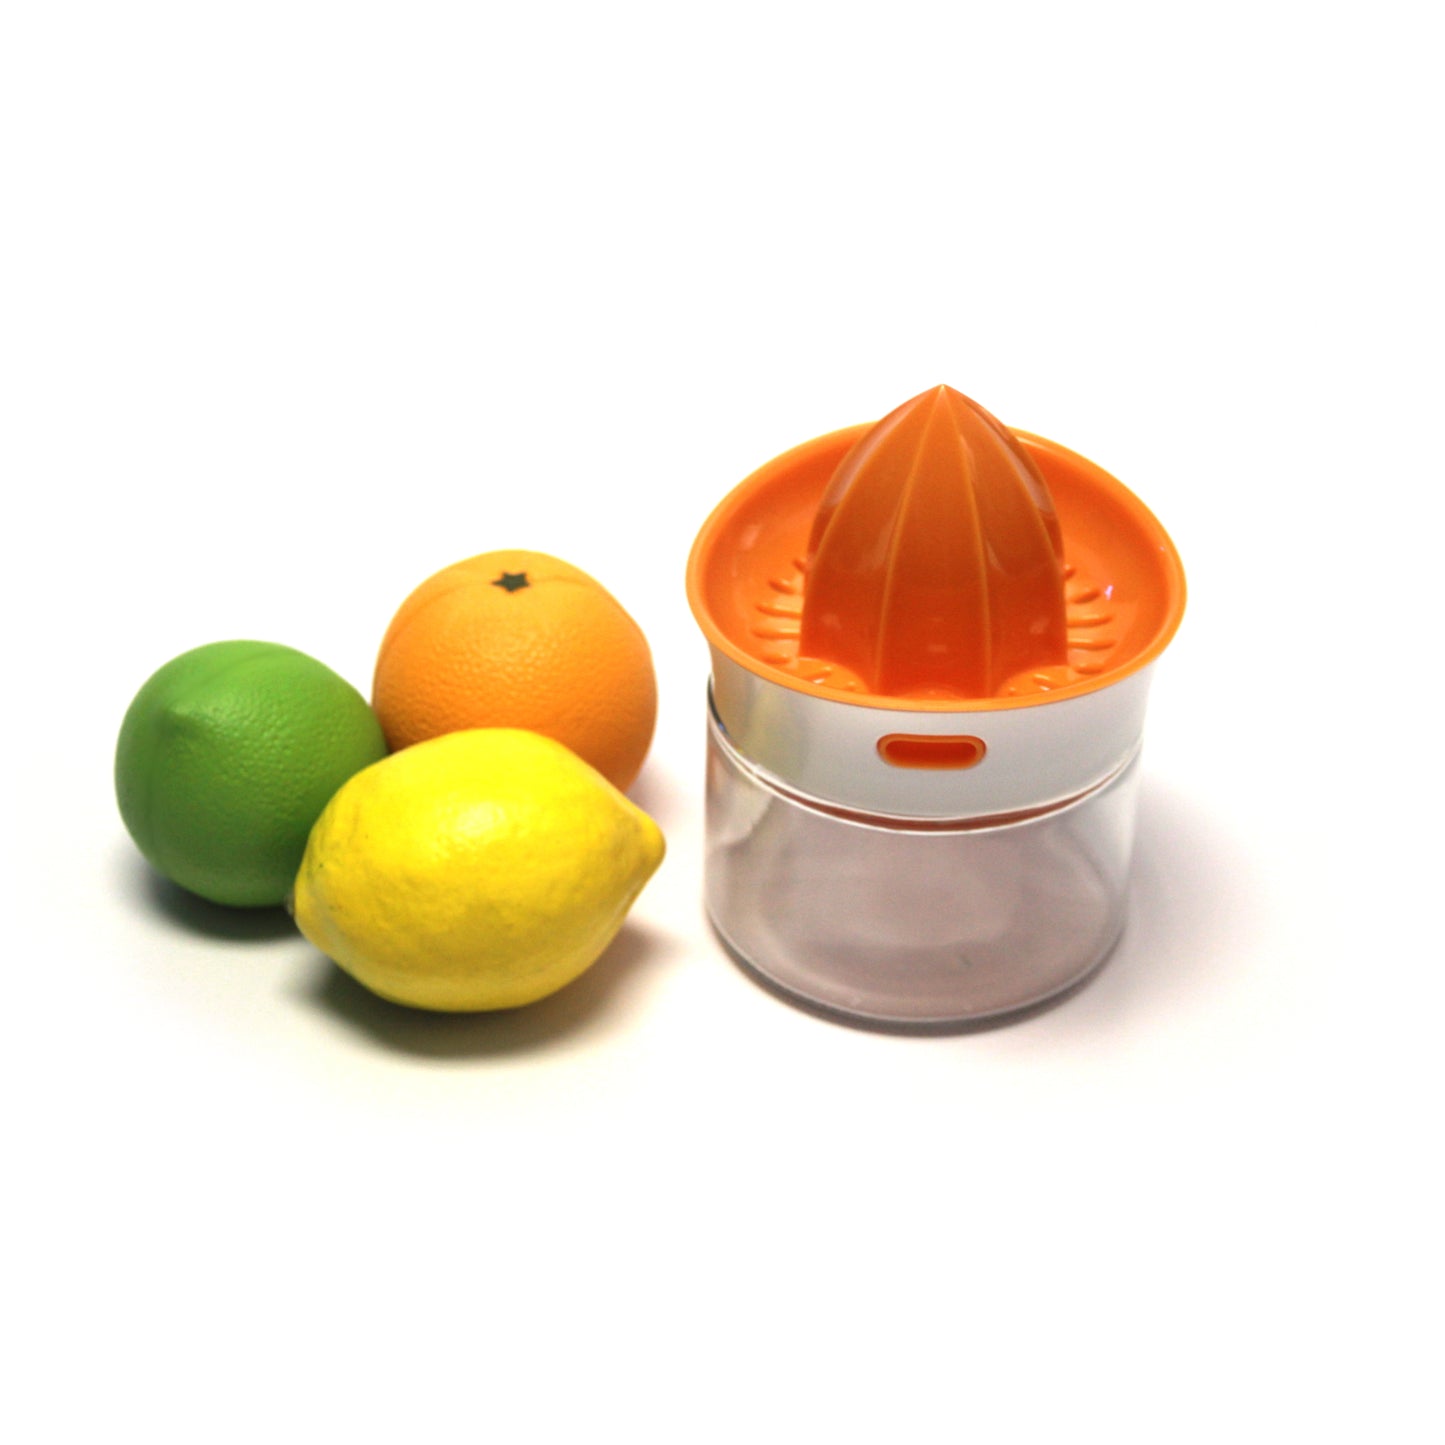 Squeeze & Pour Citrus Juicer